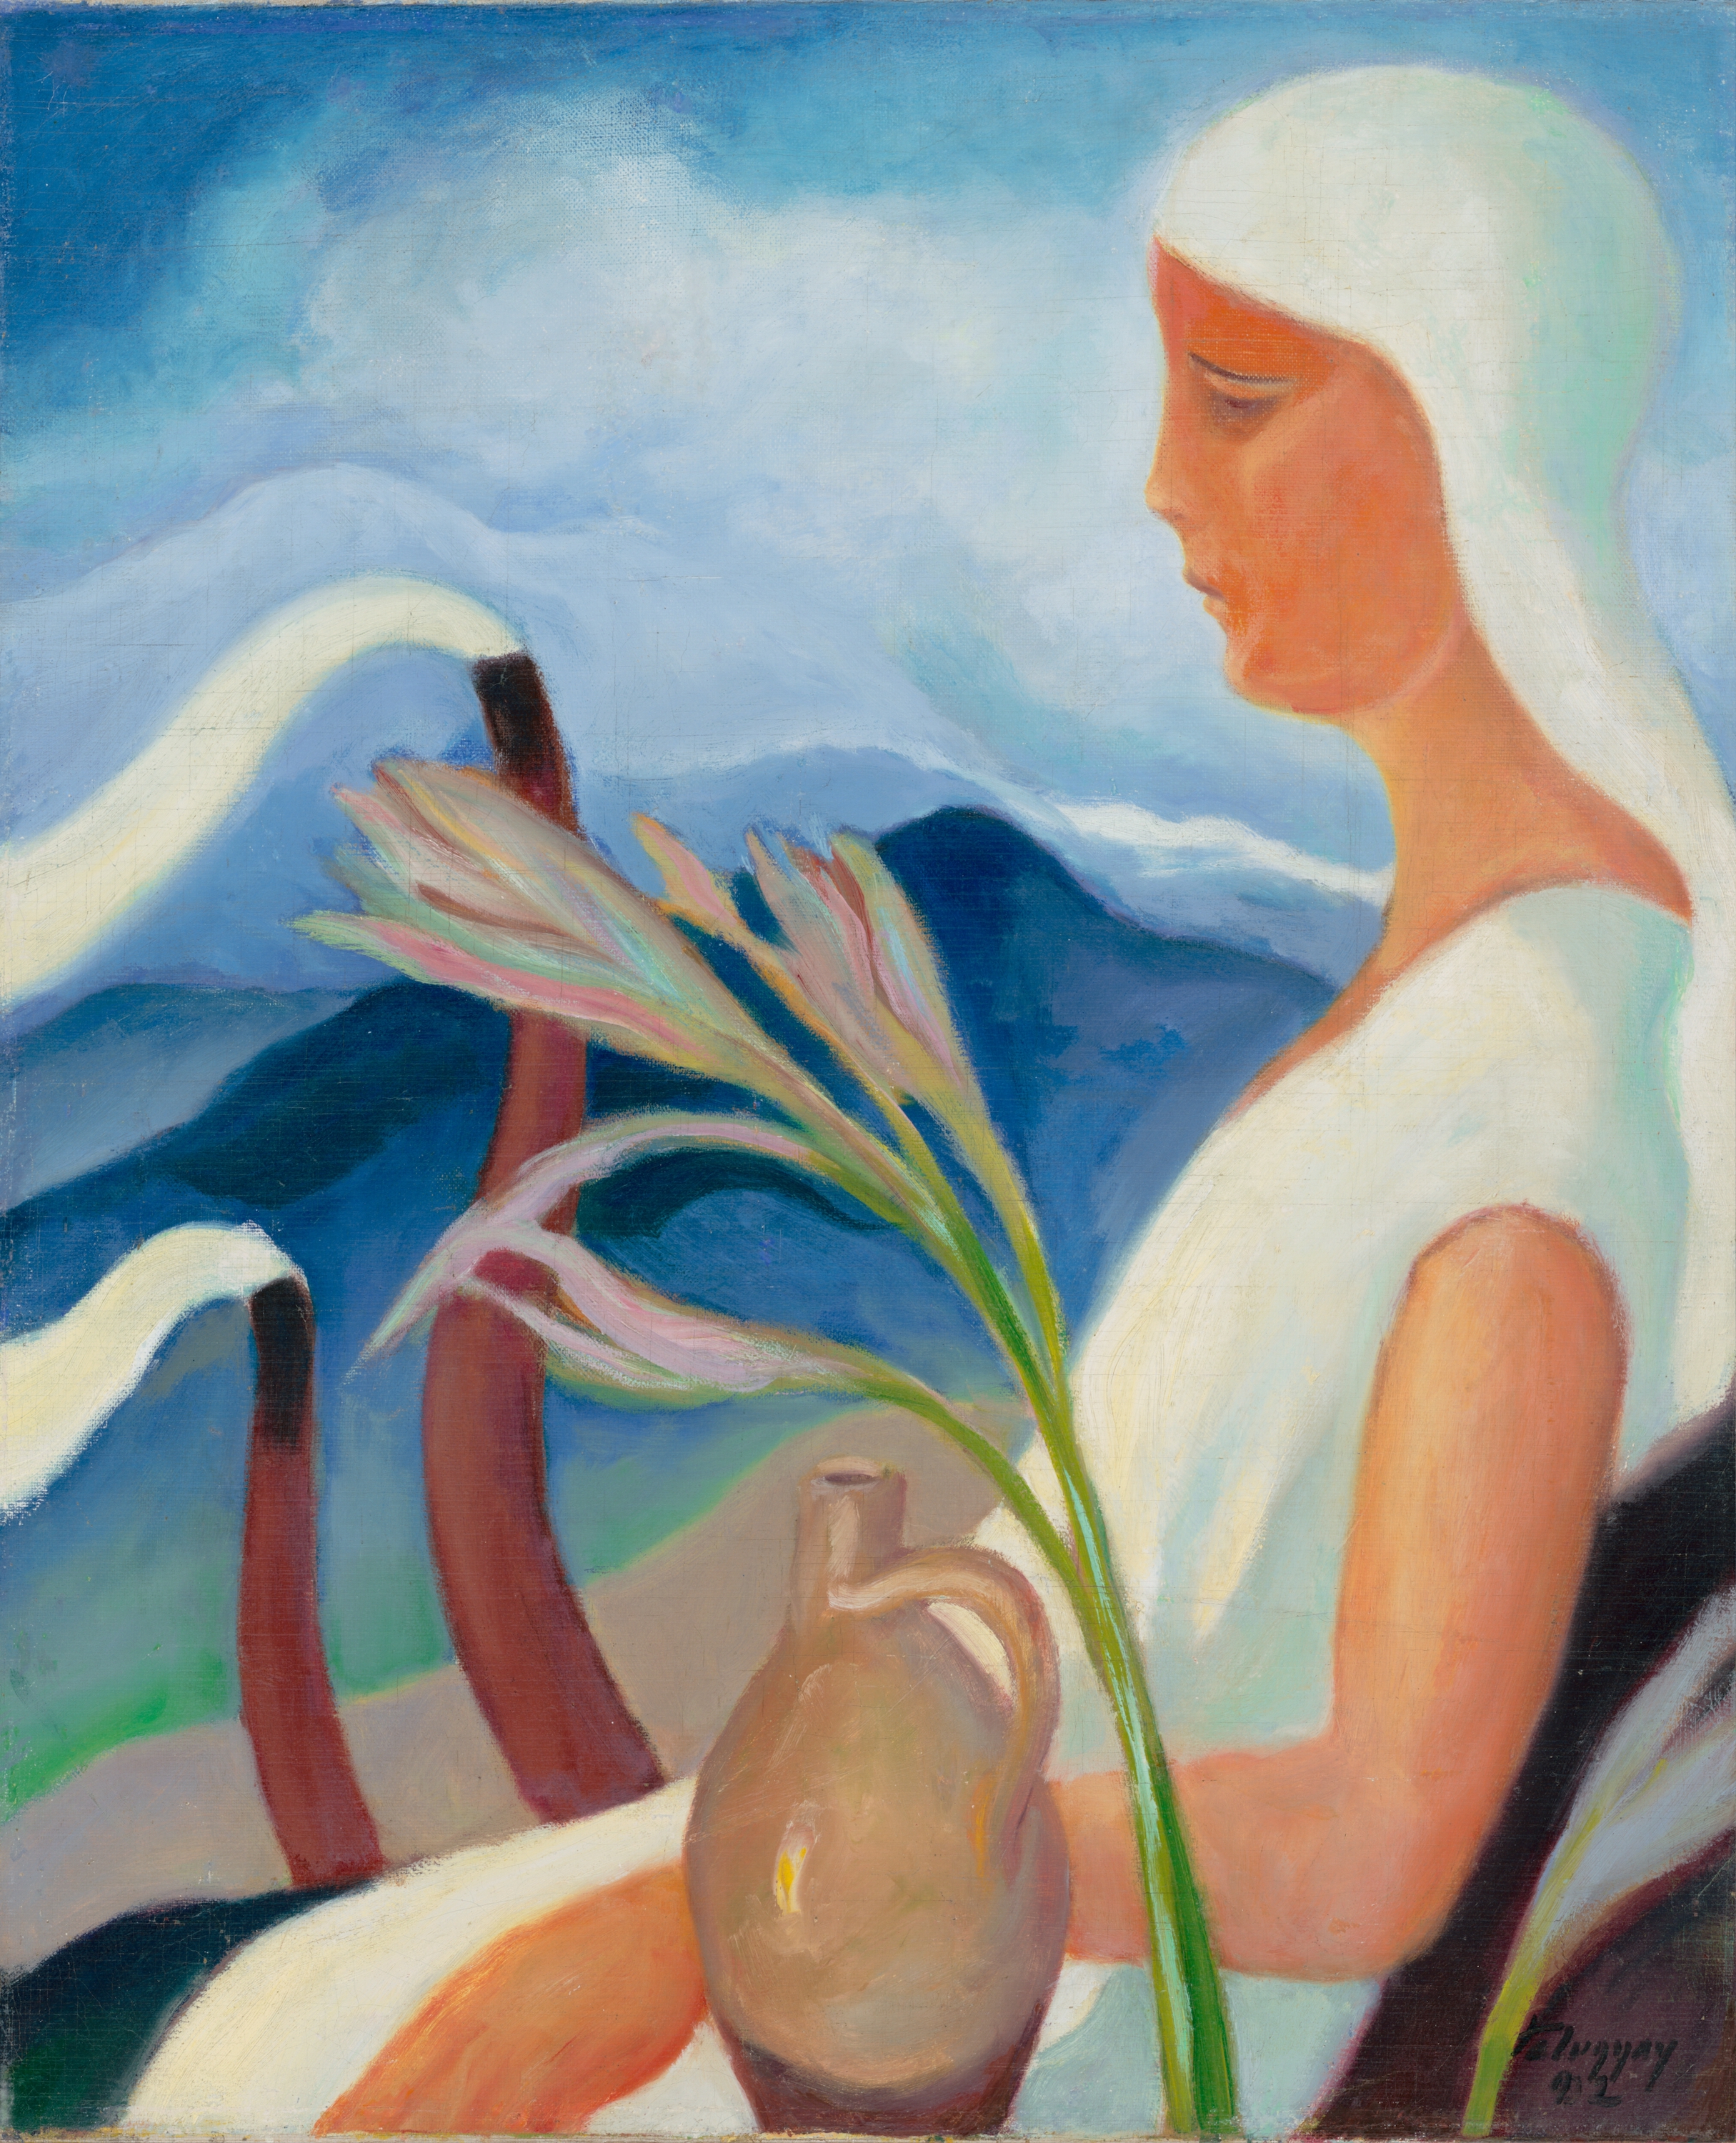 白衣女孩和工廠的煙囪和鮮花 by Zoltán Palugyay - 1932 - 61.5 x 51.5 cm 